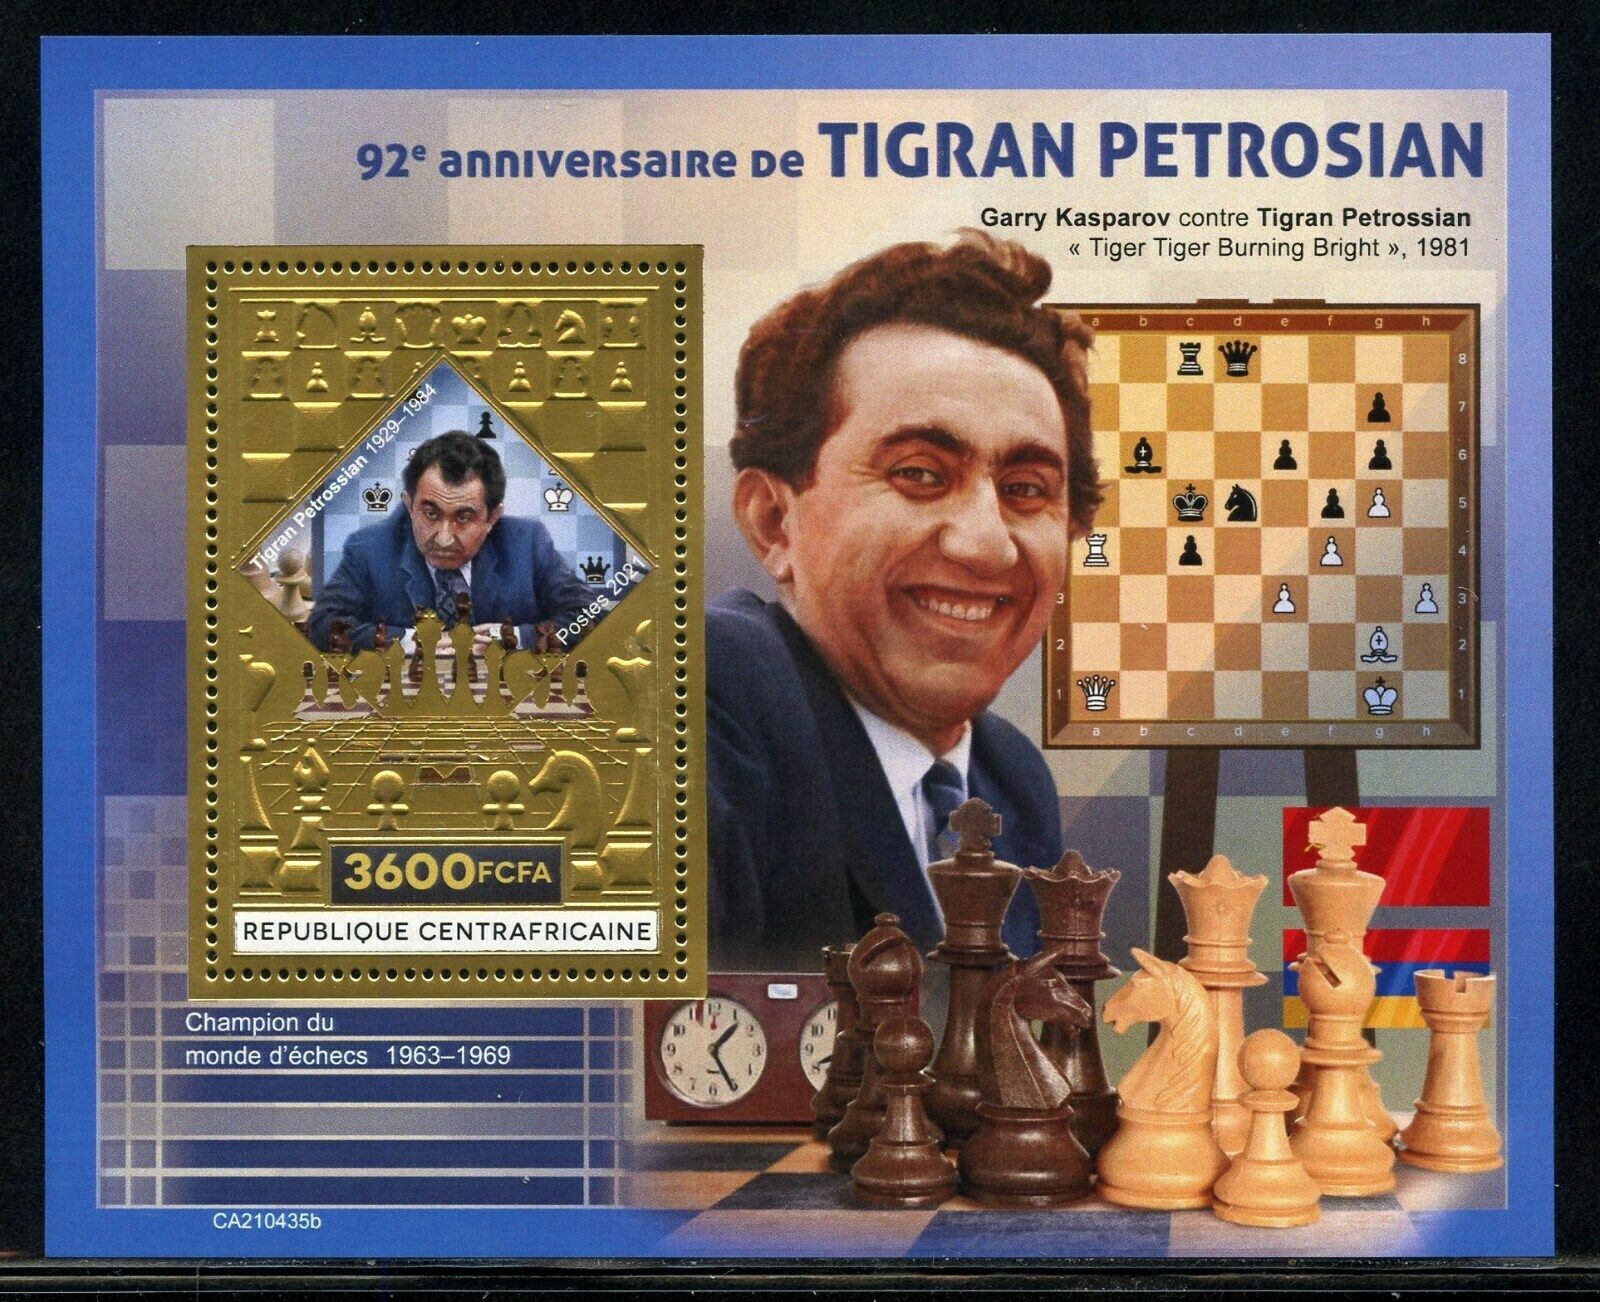 Petrosian, Tigran (1929-1984)